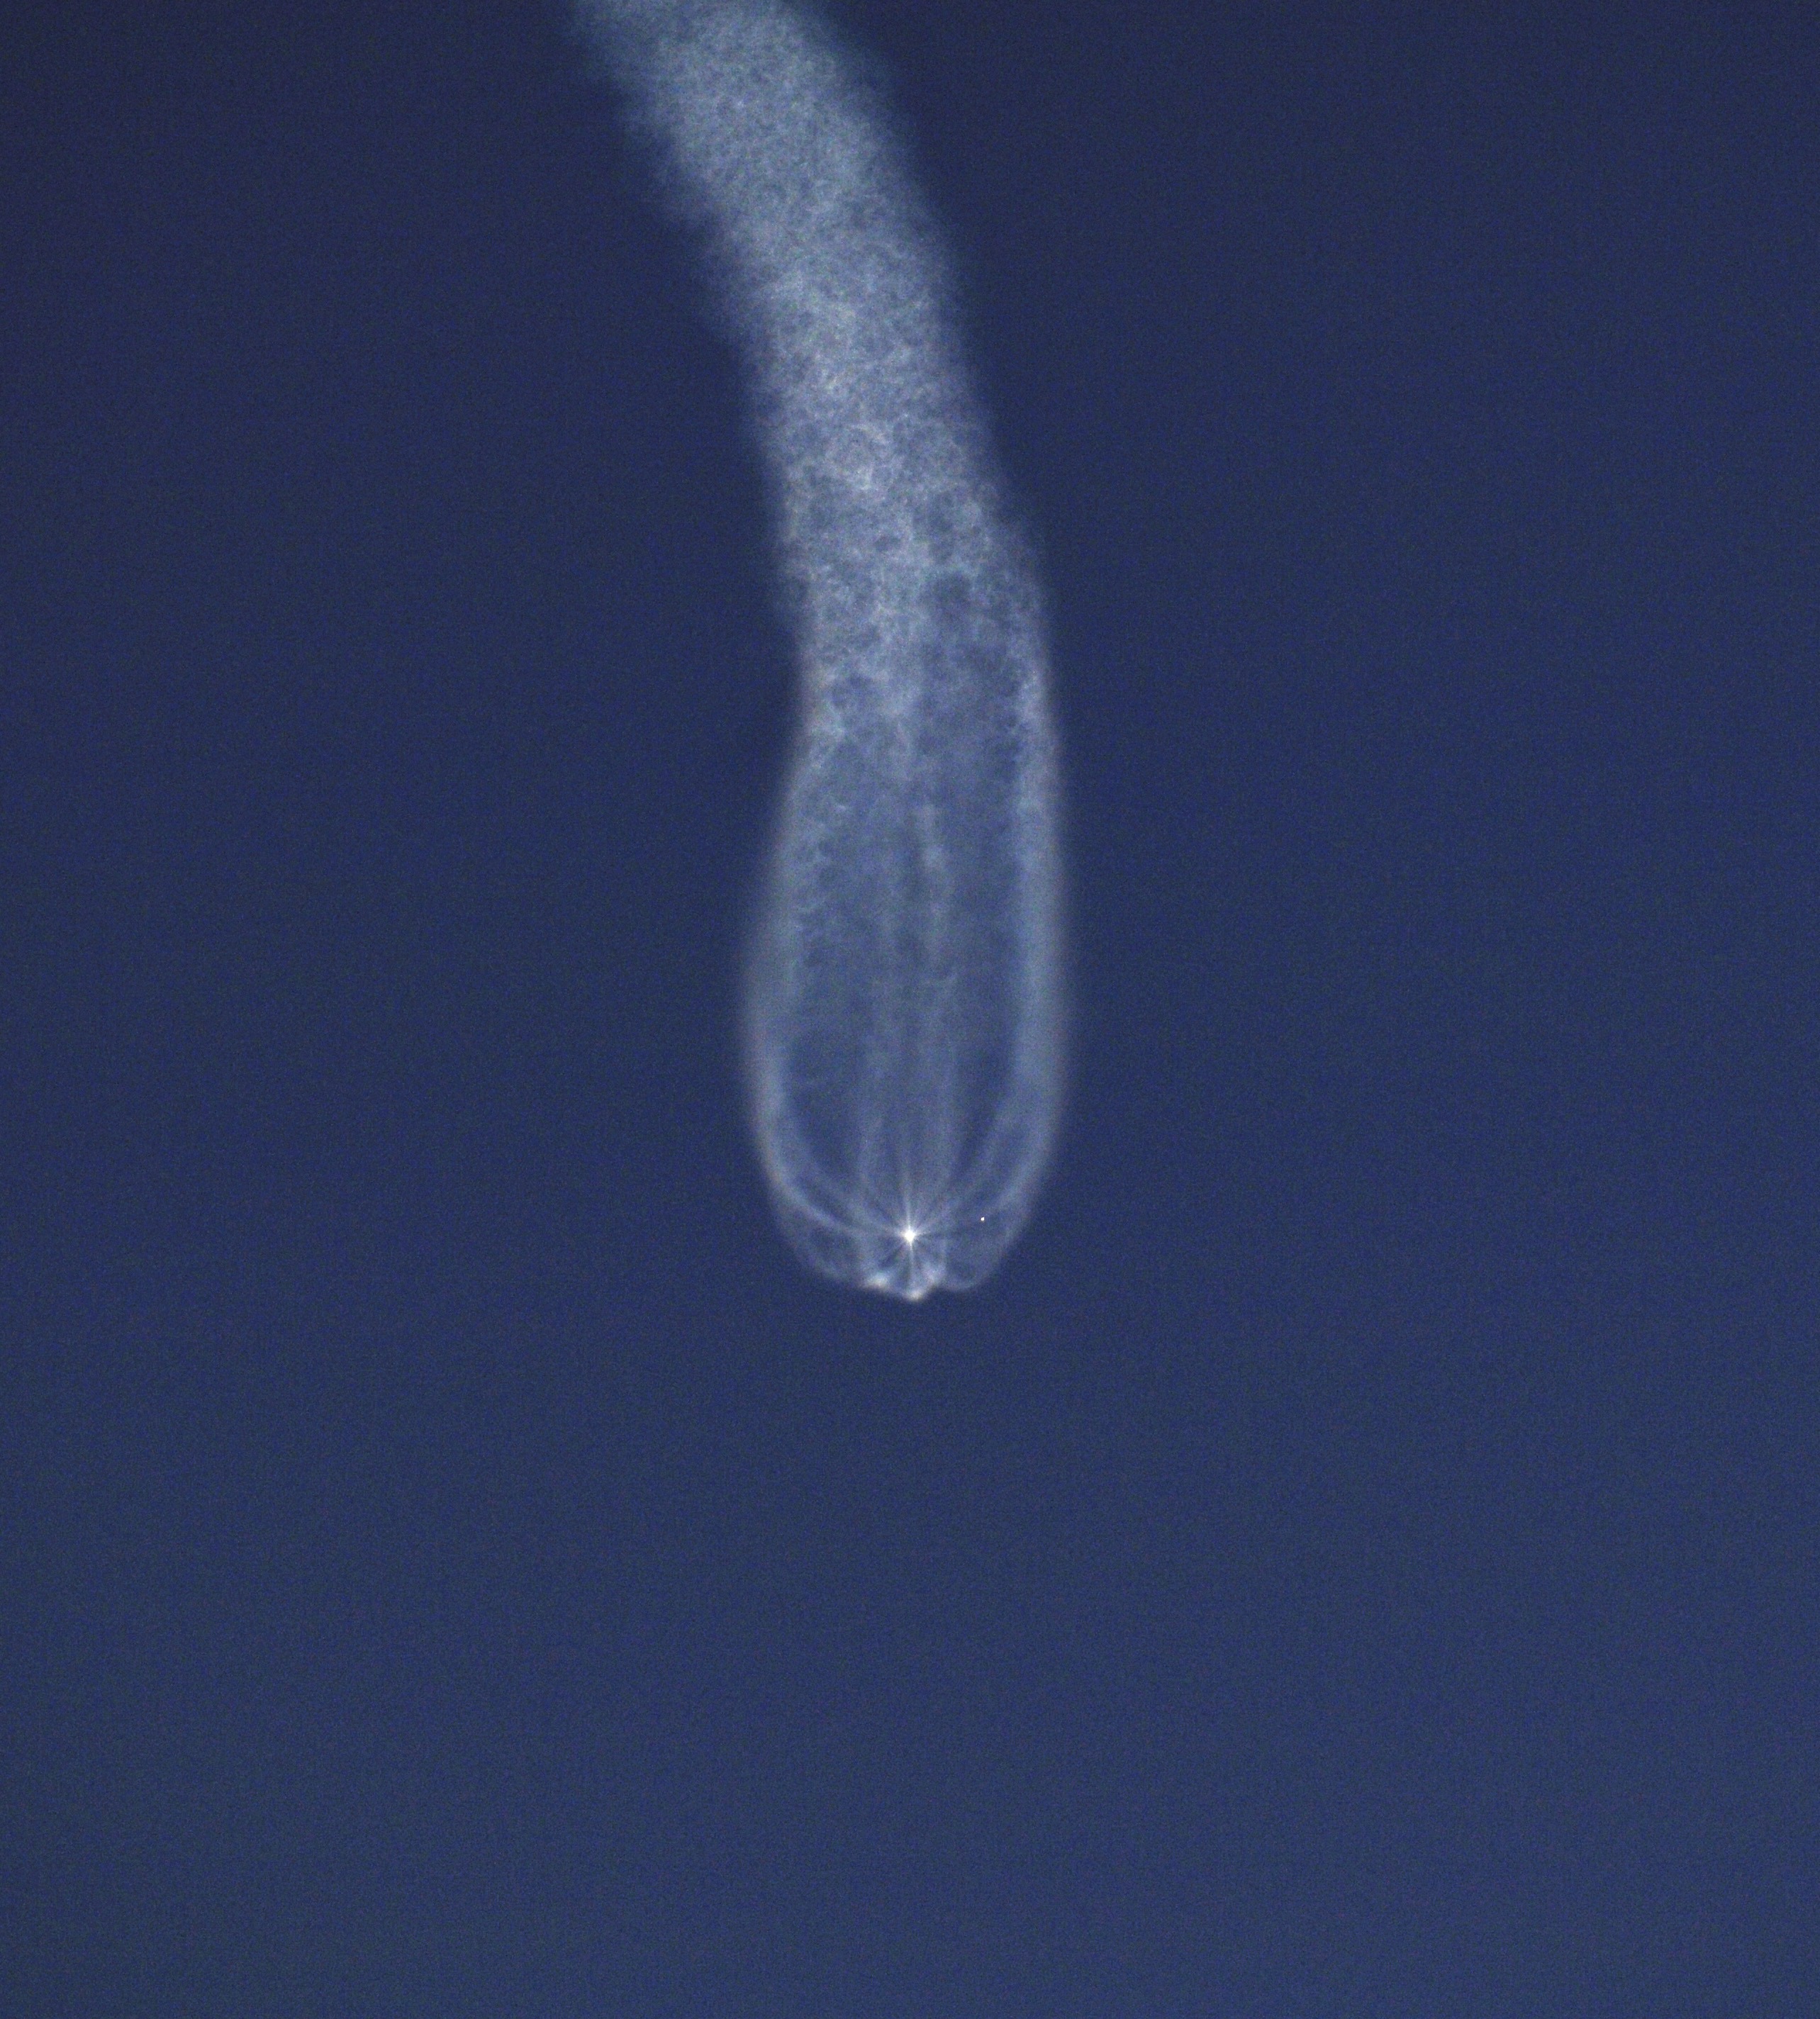 Soyuz rocket booster separation